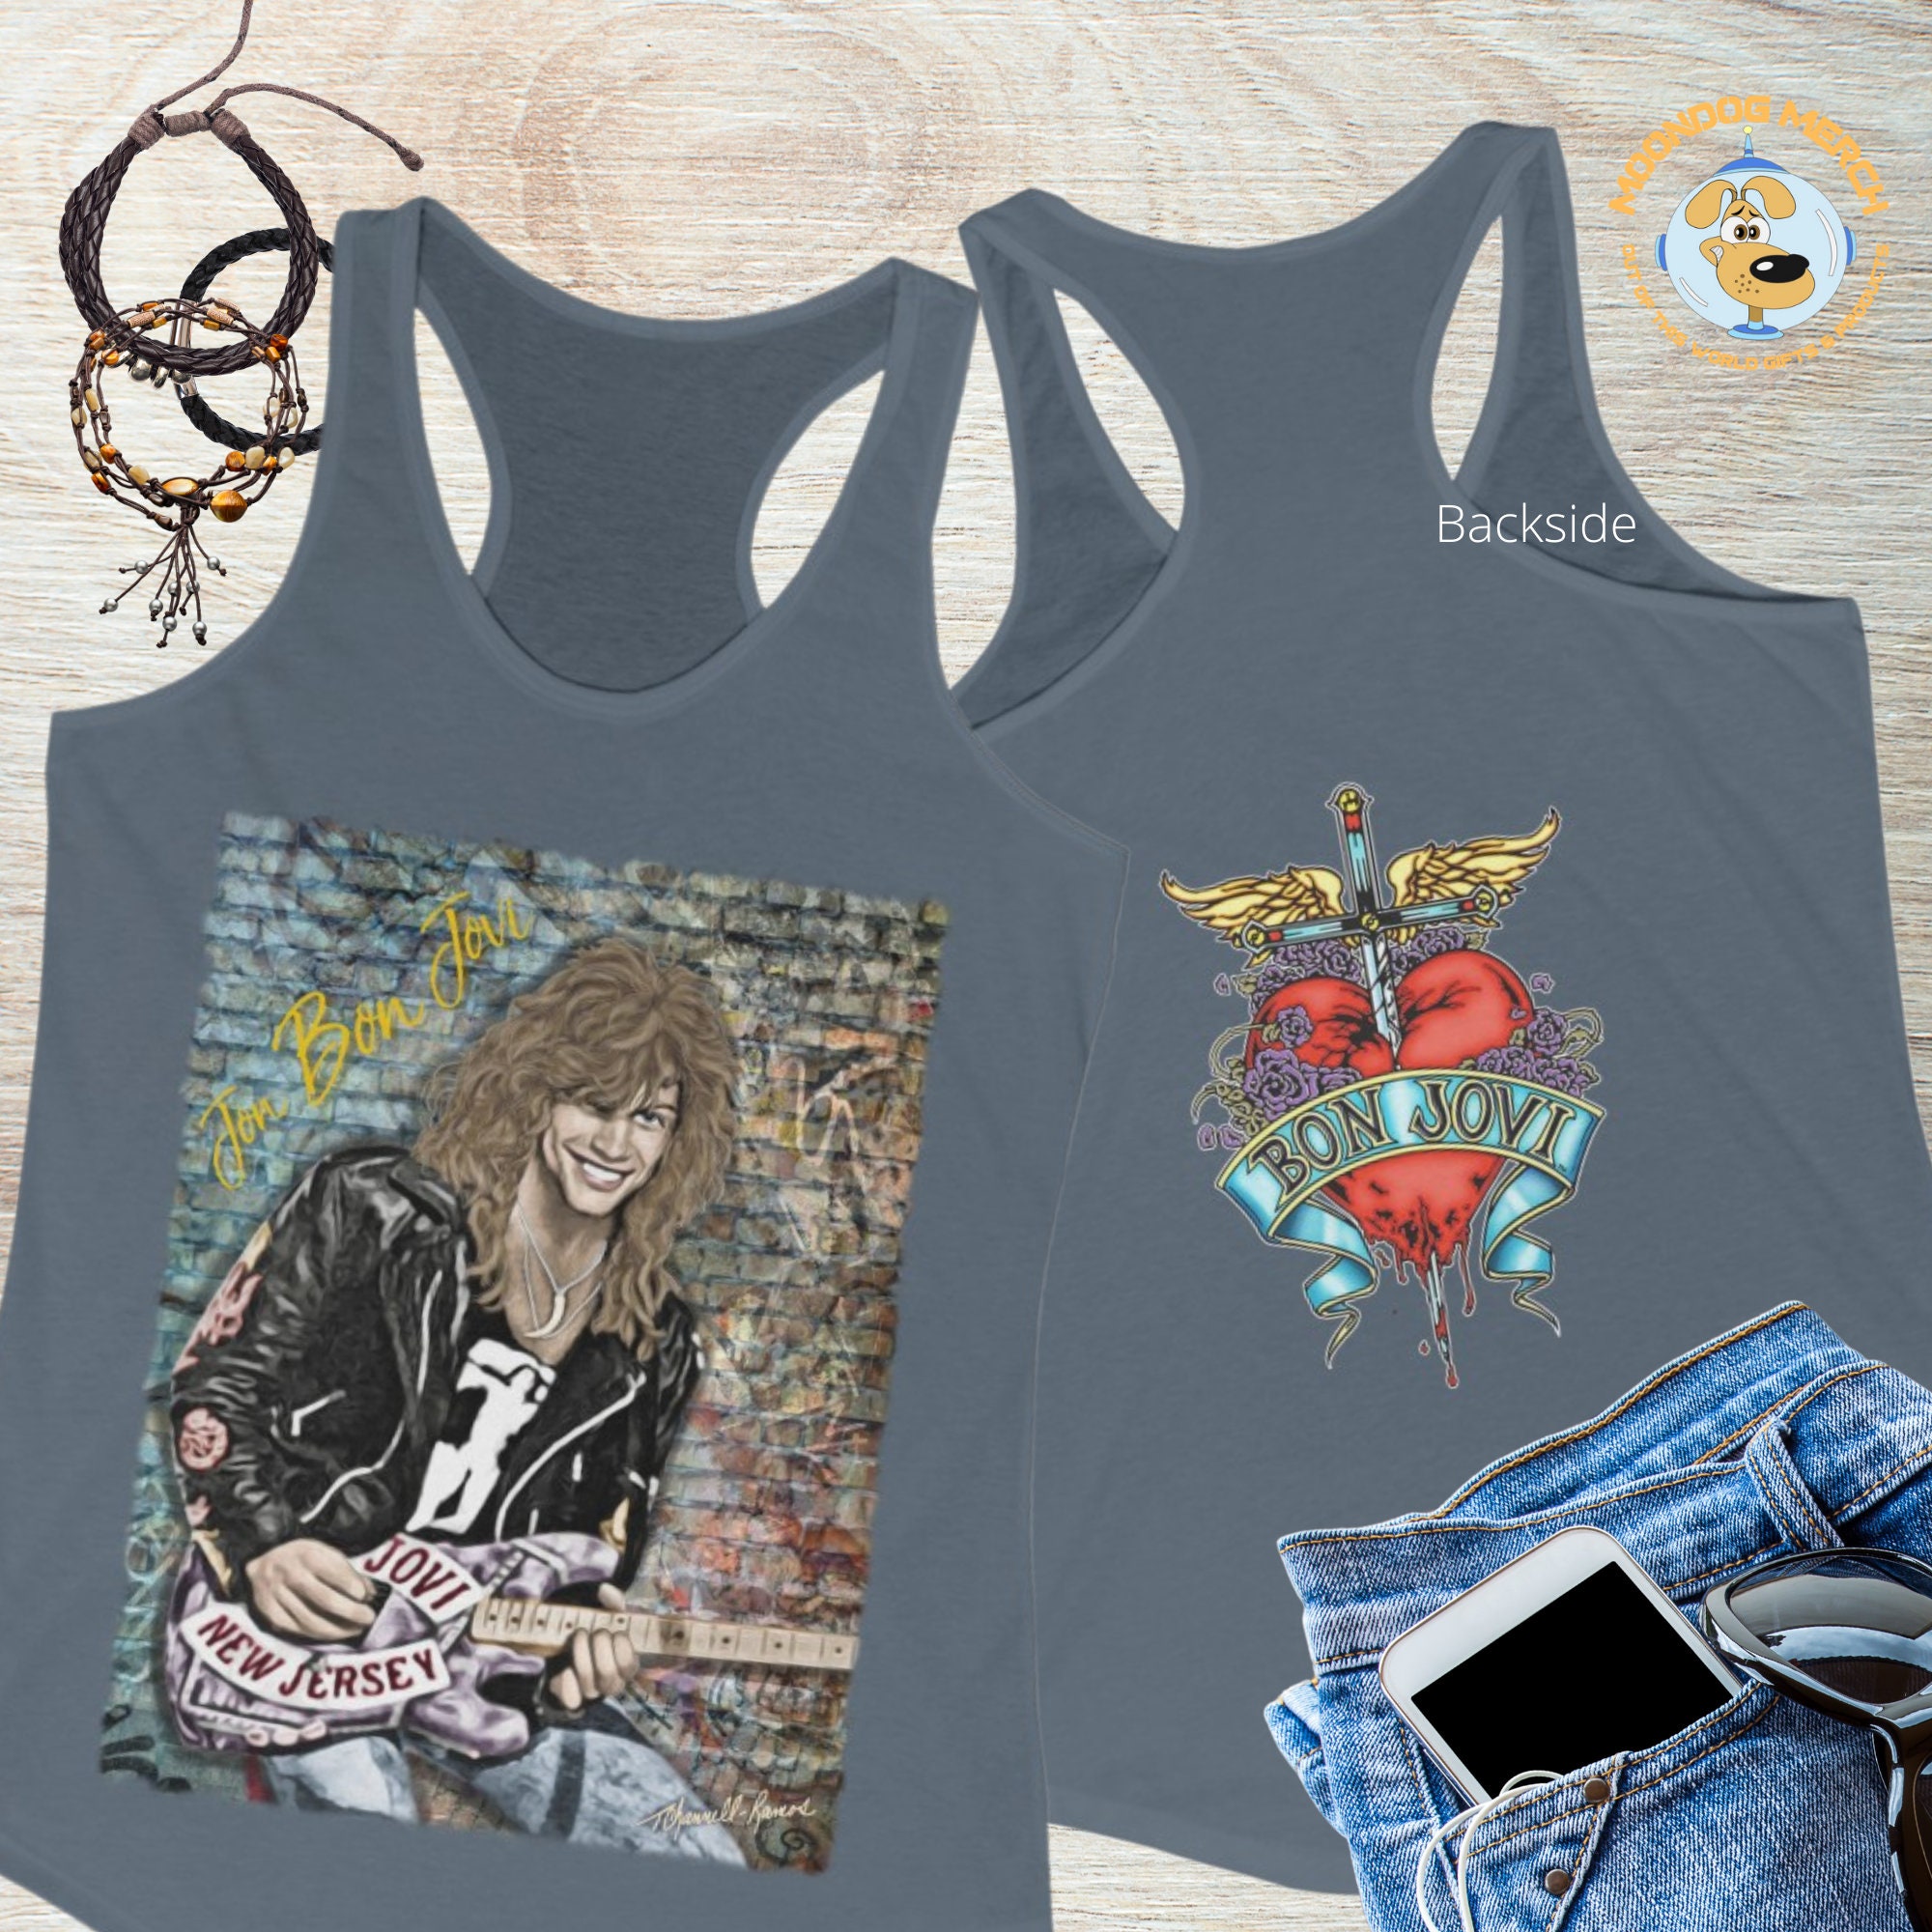 Discover Jon Bon Jovi T-shirt, Racerback Tank, 80s Vintage Retro Rock Band